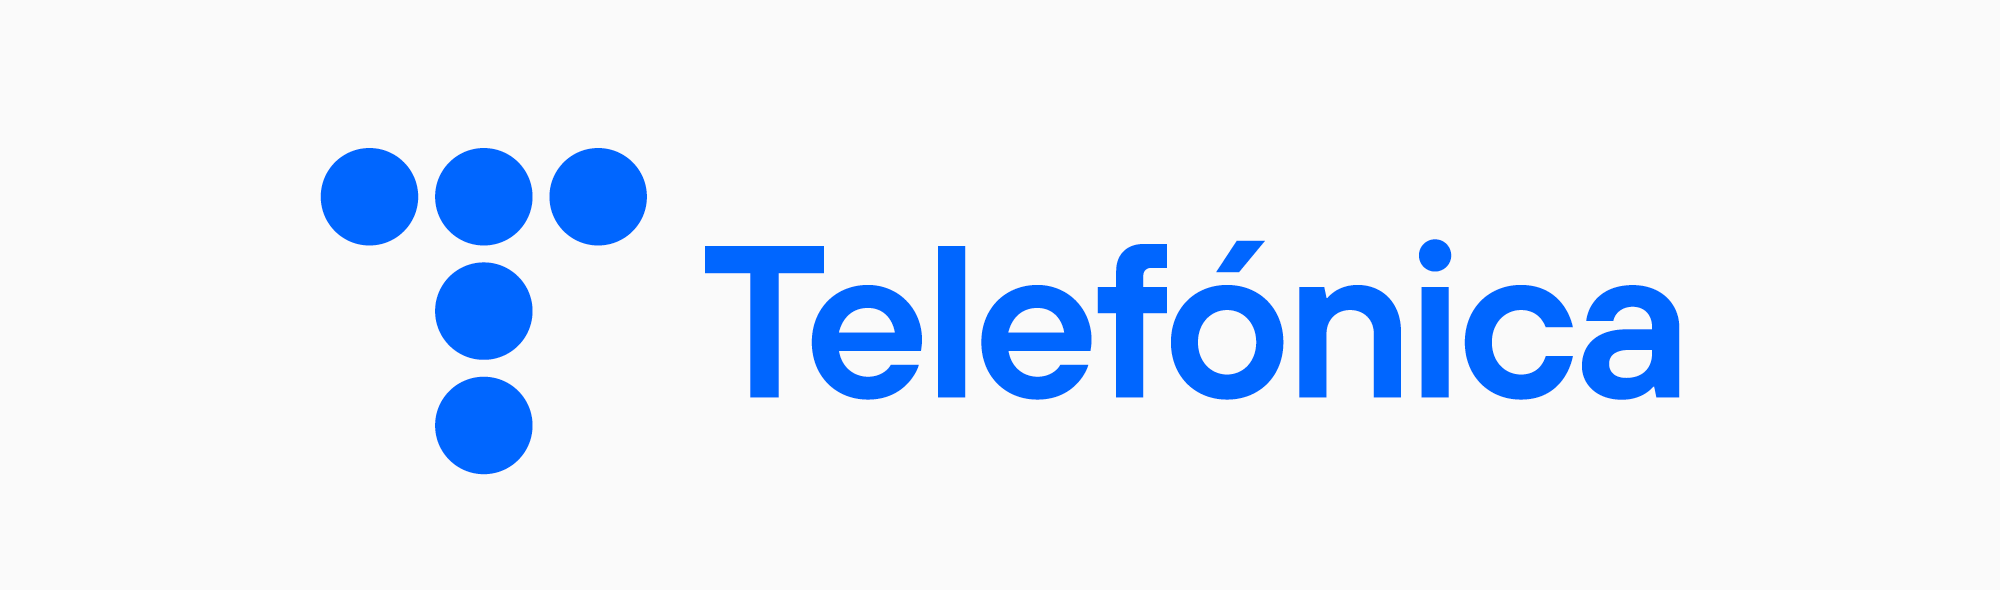 Telefonica logo font